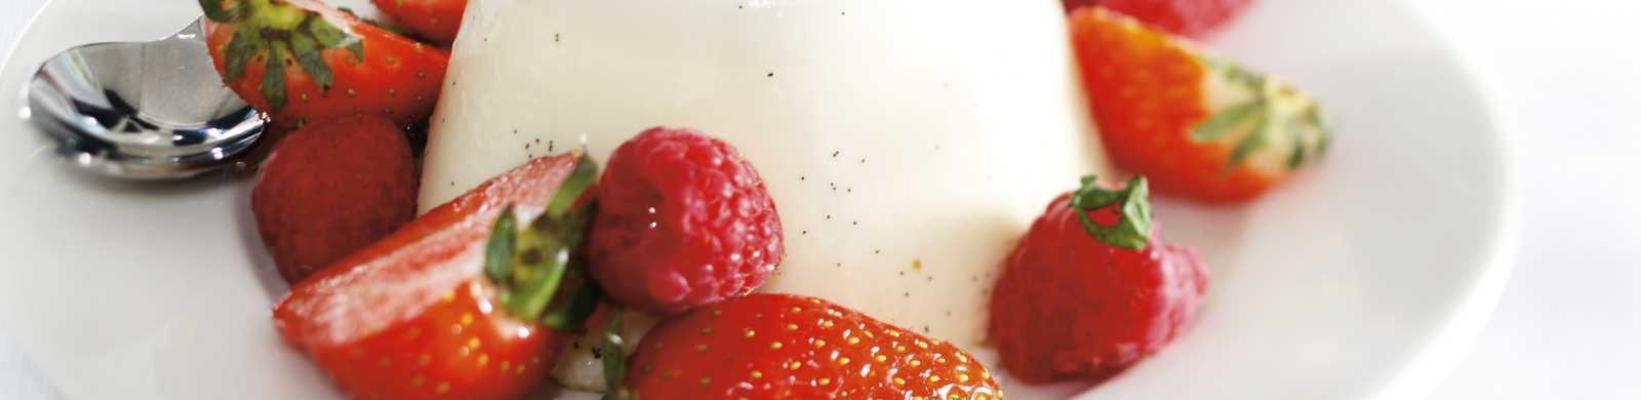 vanilla panna cotta with red fruit